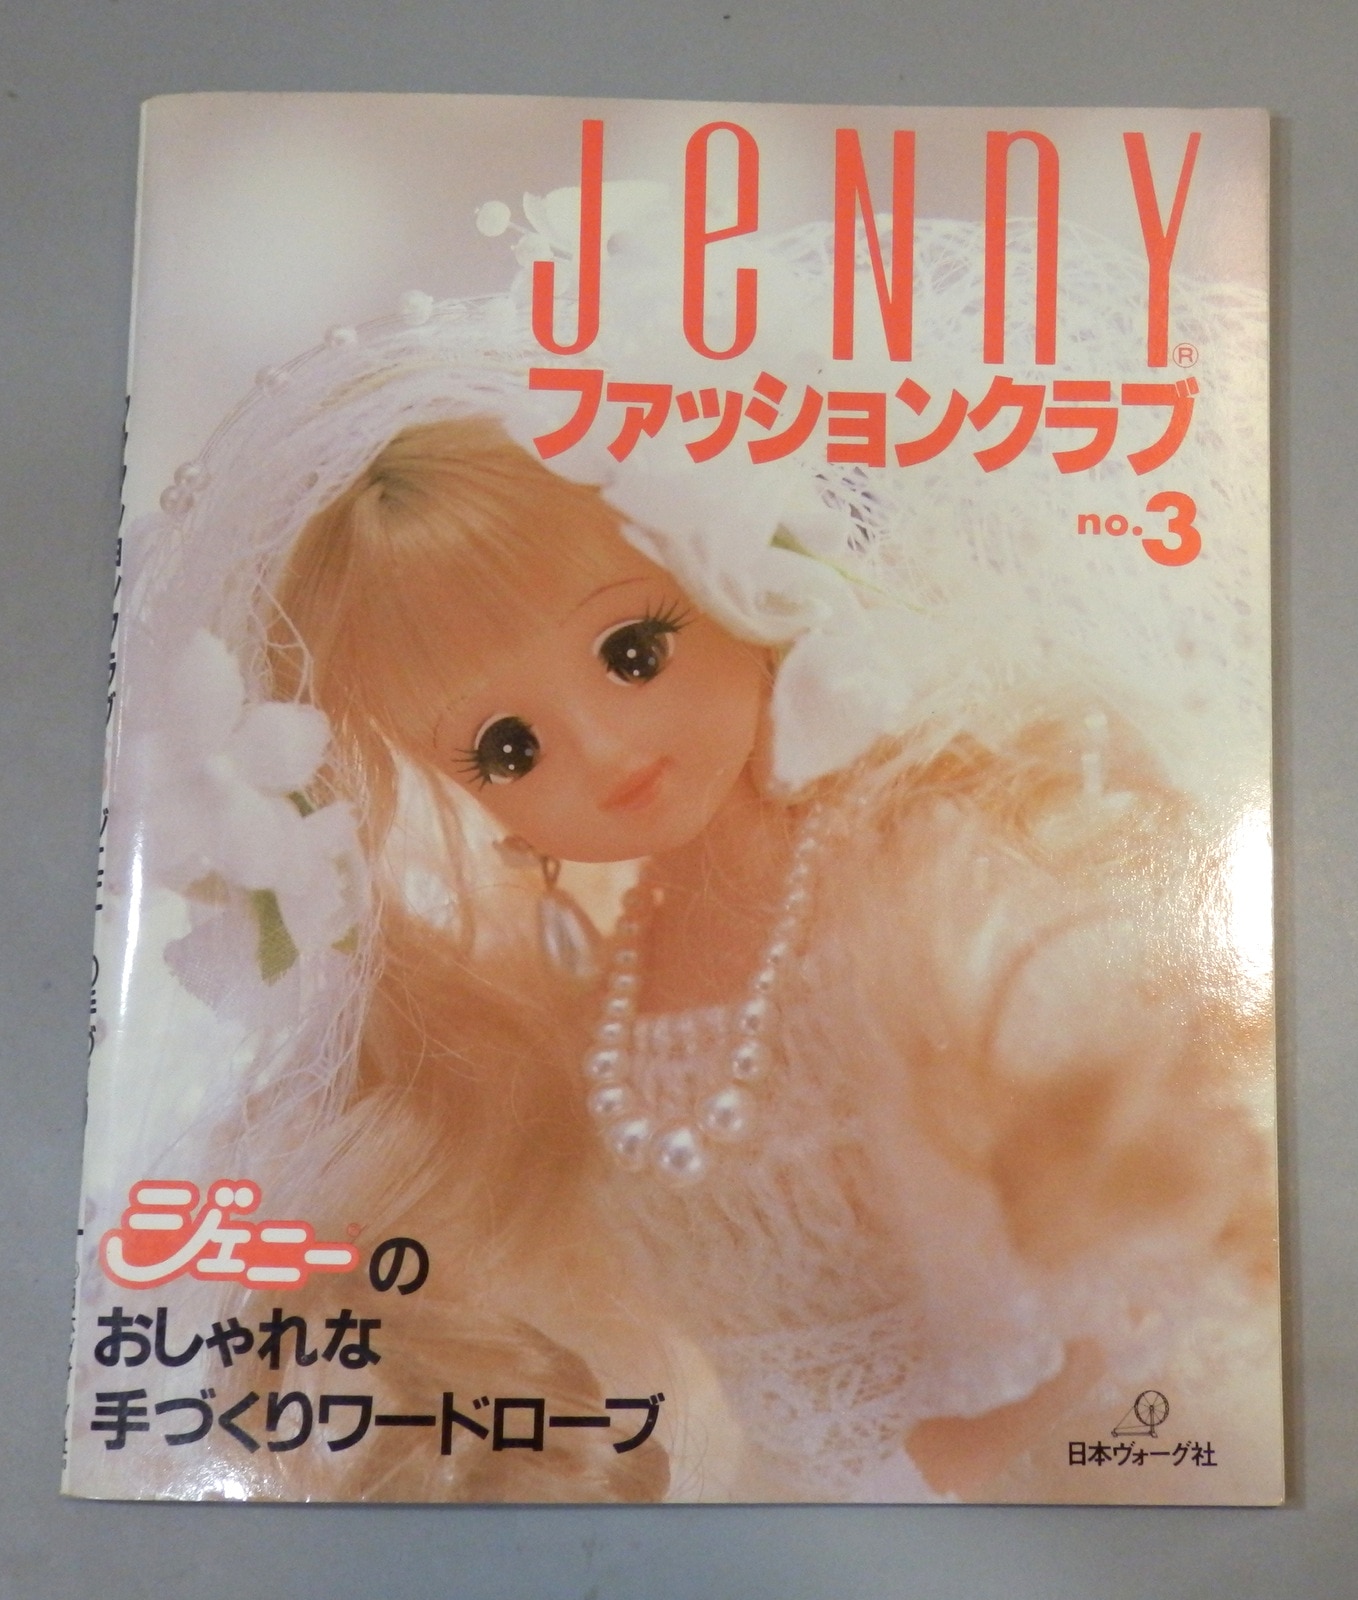 jenny ジェニー no.4~22 ファッションクラブ ドールブック - 女性情報誌